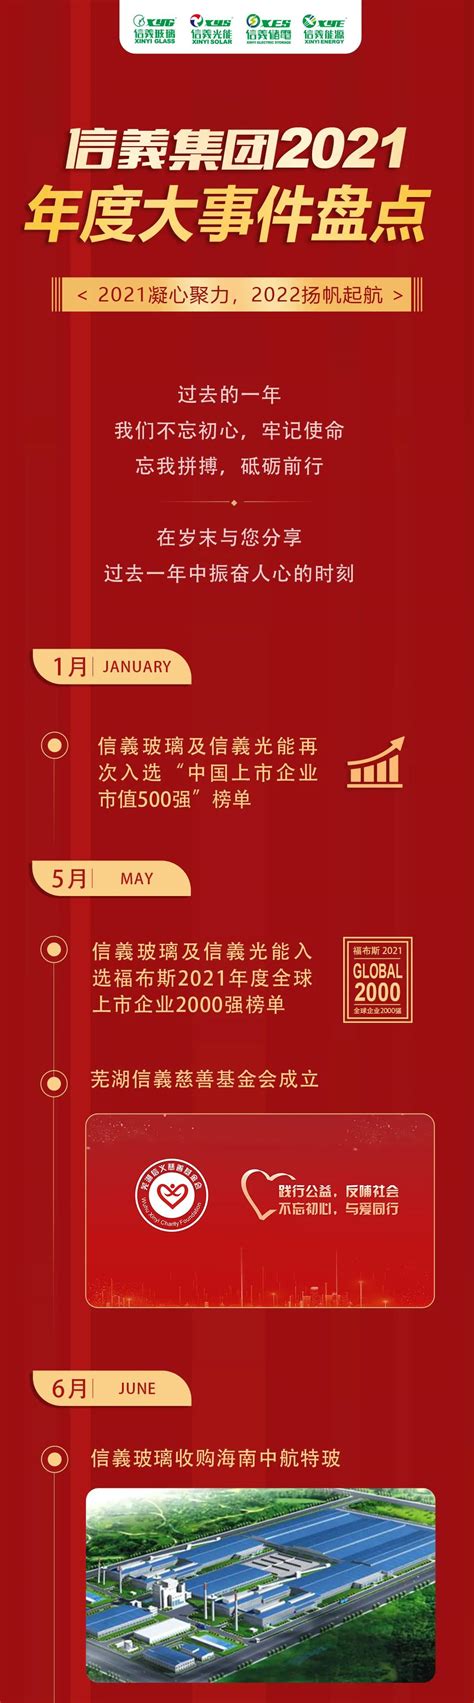 信义集团2021年度大事件盘点-要闻-资讯-中国粉体网